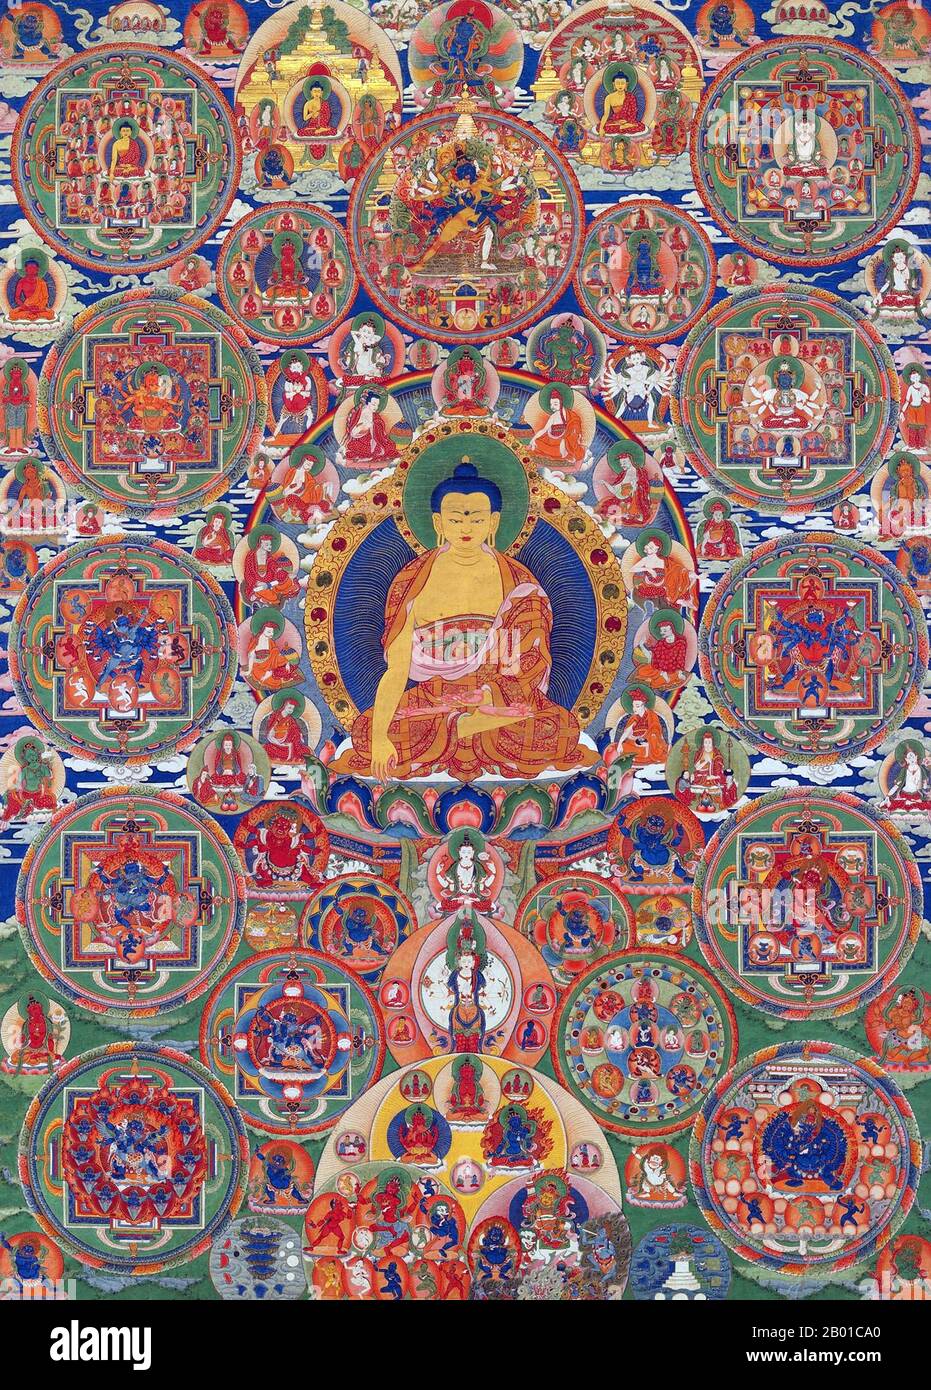 Bhutan: Un mandala buddista da Seula Gompa, Punakha, 19th ° secolo. Un mandala è una configurazione geometrica di simboli, usata per focalizzare l'attenzione dei praticanti e degli adepti, e come strumento di guida spirituale. Nel Buddismo è anche usato come mappa per rappresentare le divinità. Si stima che tra i due terzi e i tre quarti della popolazione bhutanese seguano il buddismo Vajrayana, che è anche la religione di stato. Circa un quarto ad un terzo sono seguaci dell'induismo. Il Buddismo fu introdotto nel Bhutan nel 7th° secolo d.C. Foto Stock